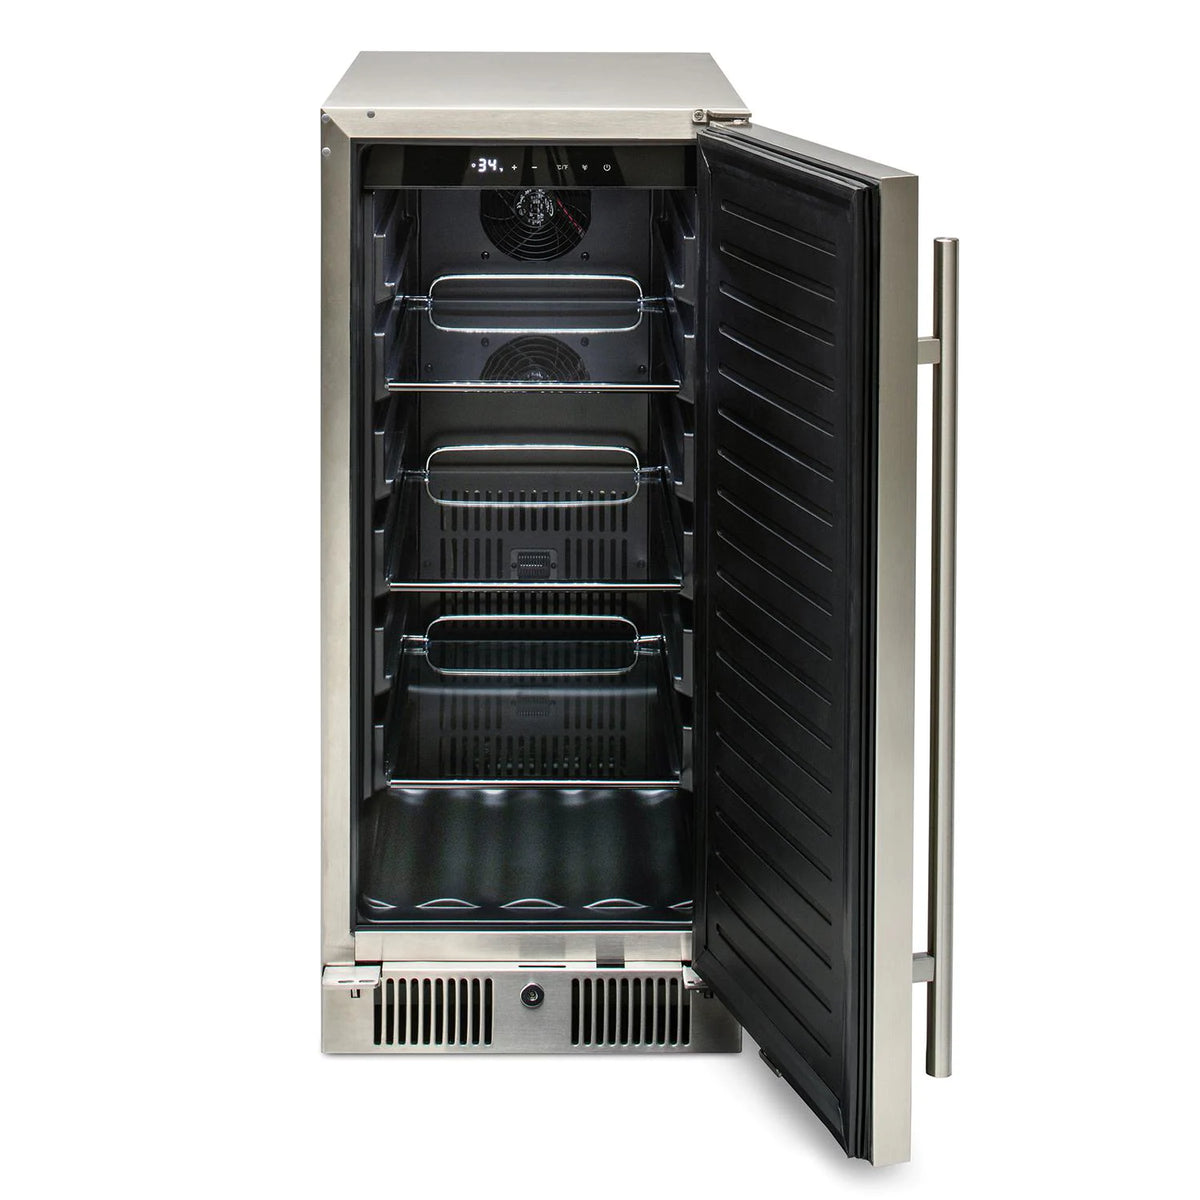 Blaze 15 Inch Outdoor Refrigerator Front View with Door Open